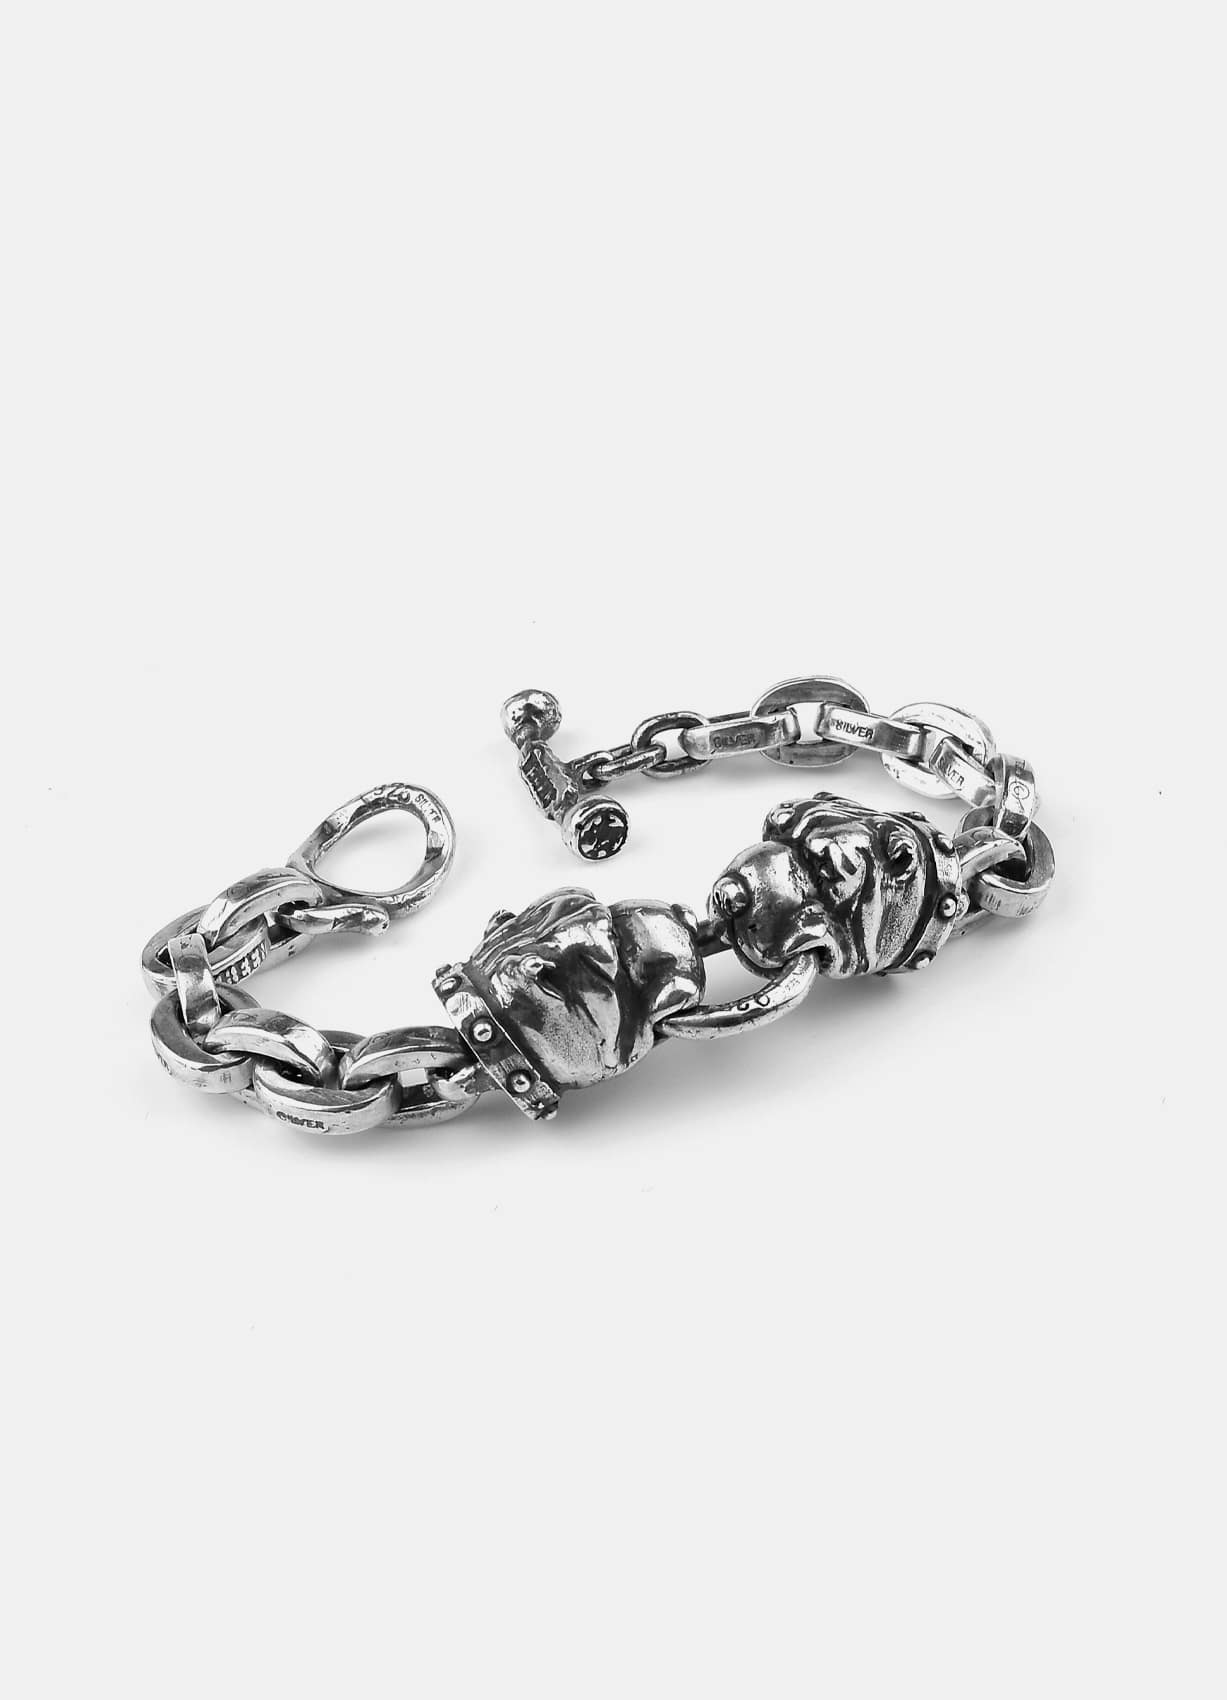 Crazy Dog Double Silver Bracelet